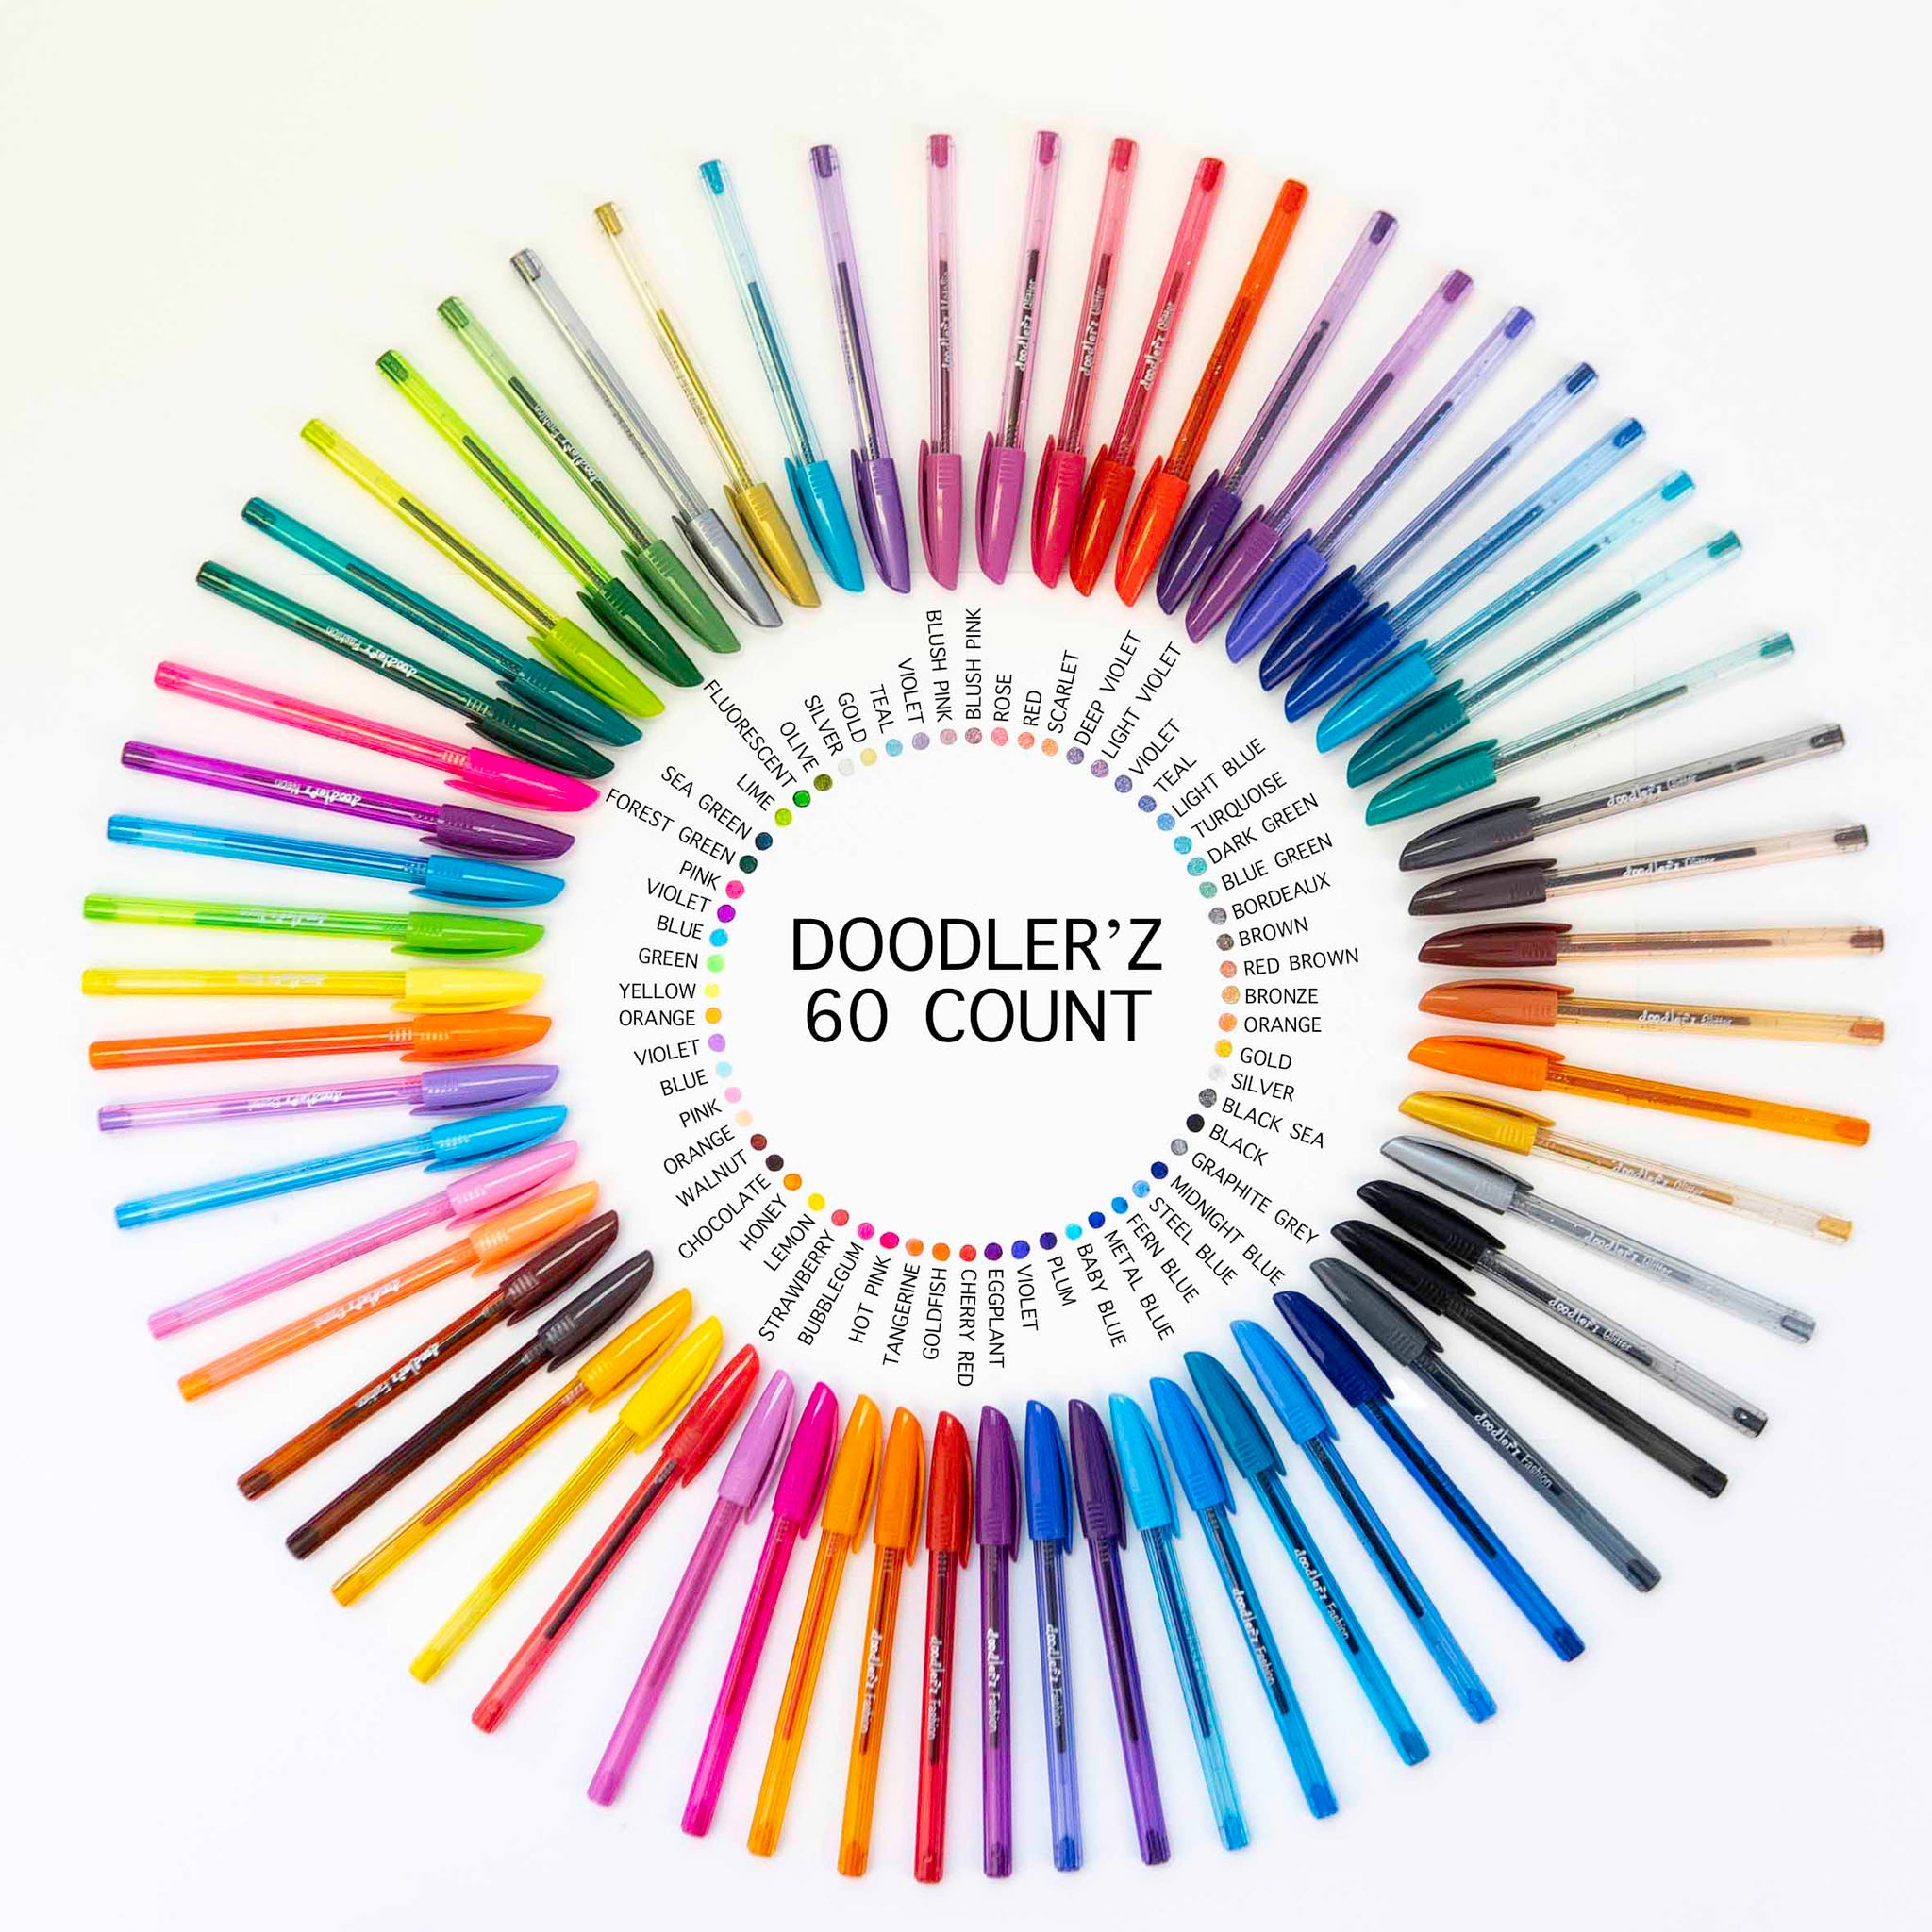 Zebra Doodler'z Gel Stick, Glitter, Assorted Ink, 1.0 mm, Bold Point - 10 Glitter colors